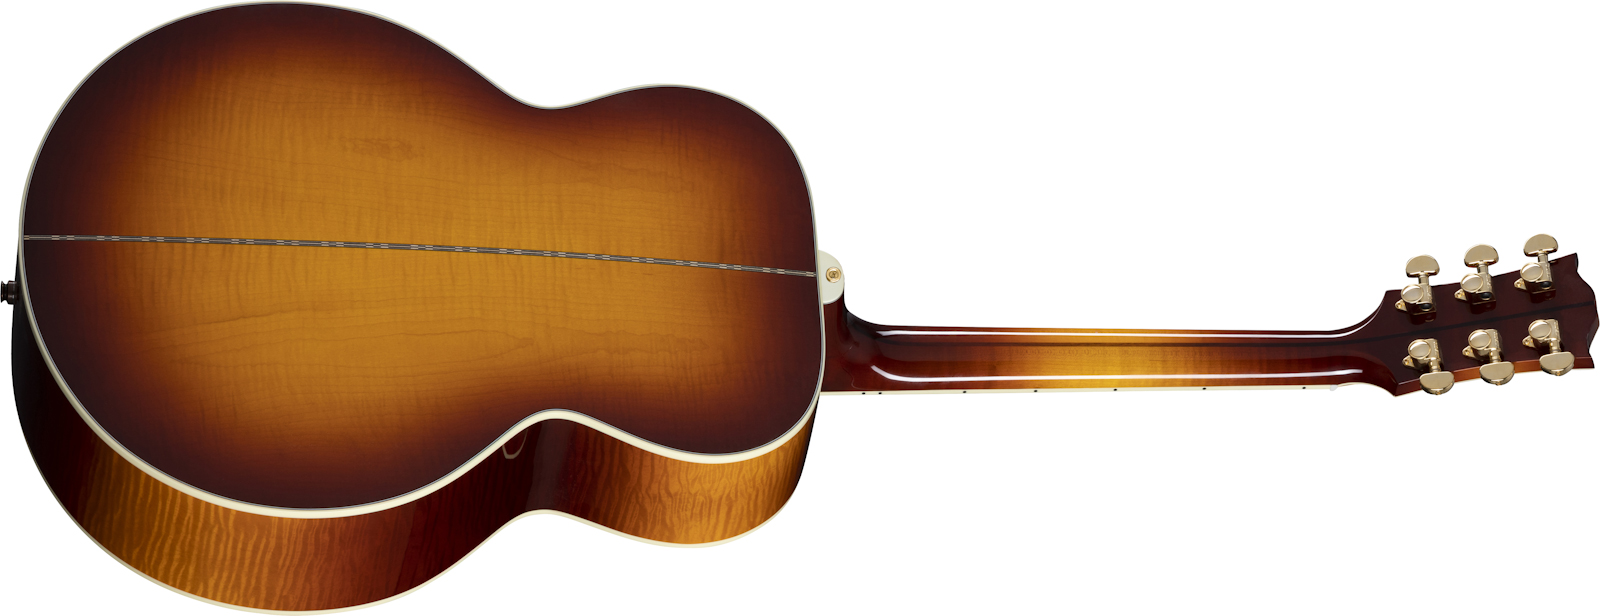 Gibson Sj-200 Standard Modern 2021 Super Jumbo Epicea Erable Rw - Automn Burst - Elektro-akoestische gitaar - Variation 1